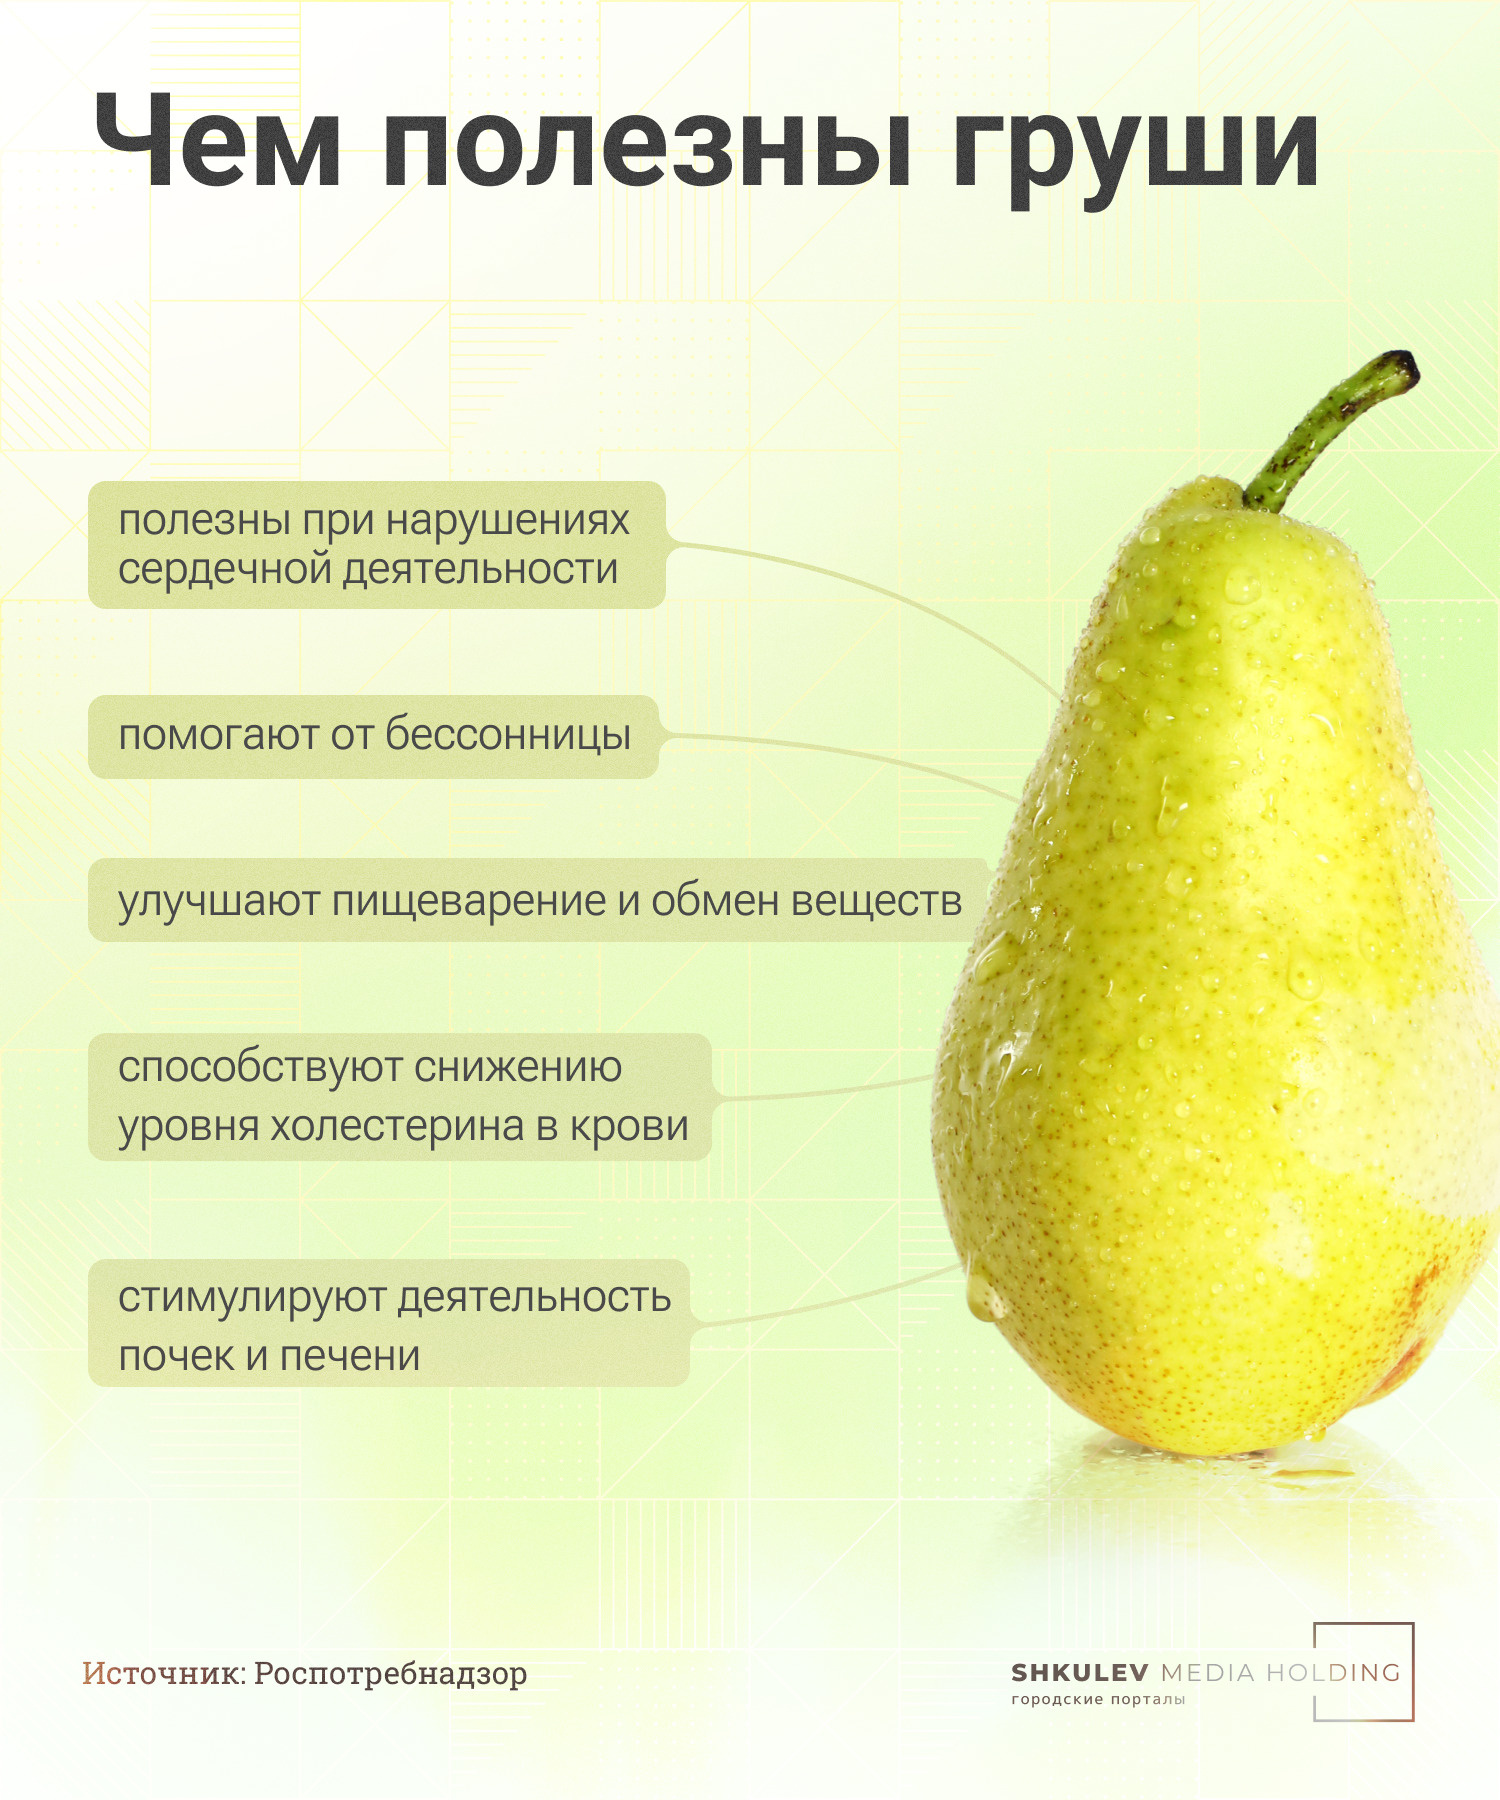 Какие фрукты самые полезные для здоровья и организма человека - 13 июня 2022 - Фонтанка.Ру